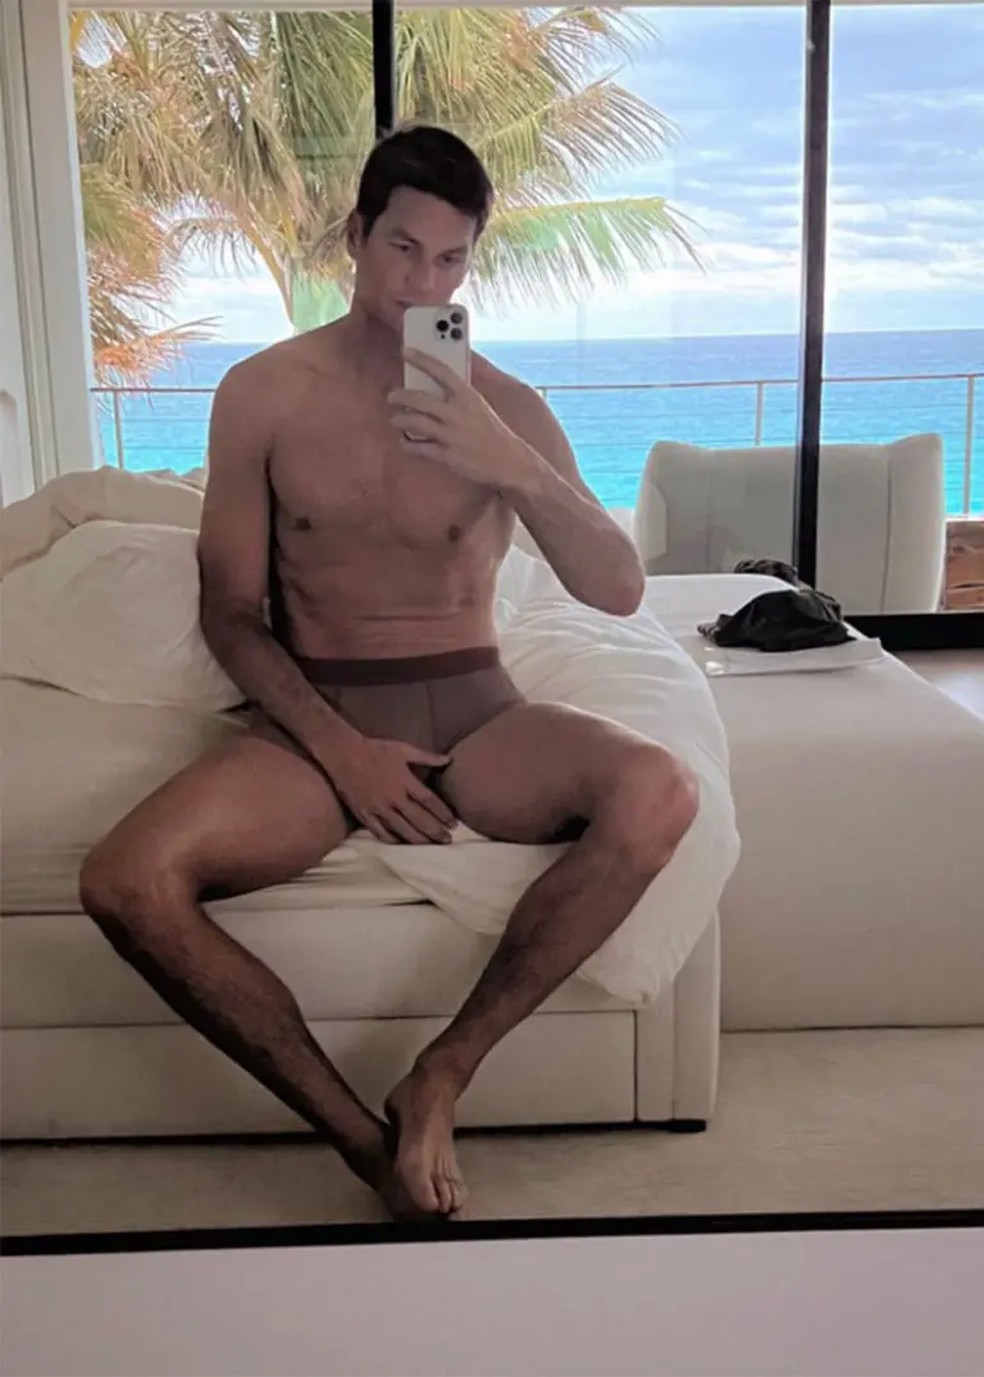 Foto de Tom Brady após divórcio de Gisele foi apelidada de "thirst trap" ("armadilha da sede") nas redes sociais — Foto: Instagram